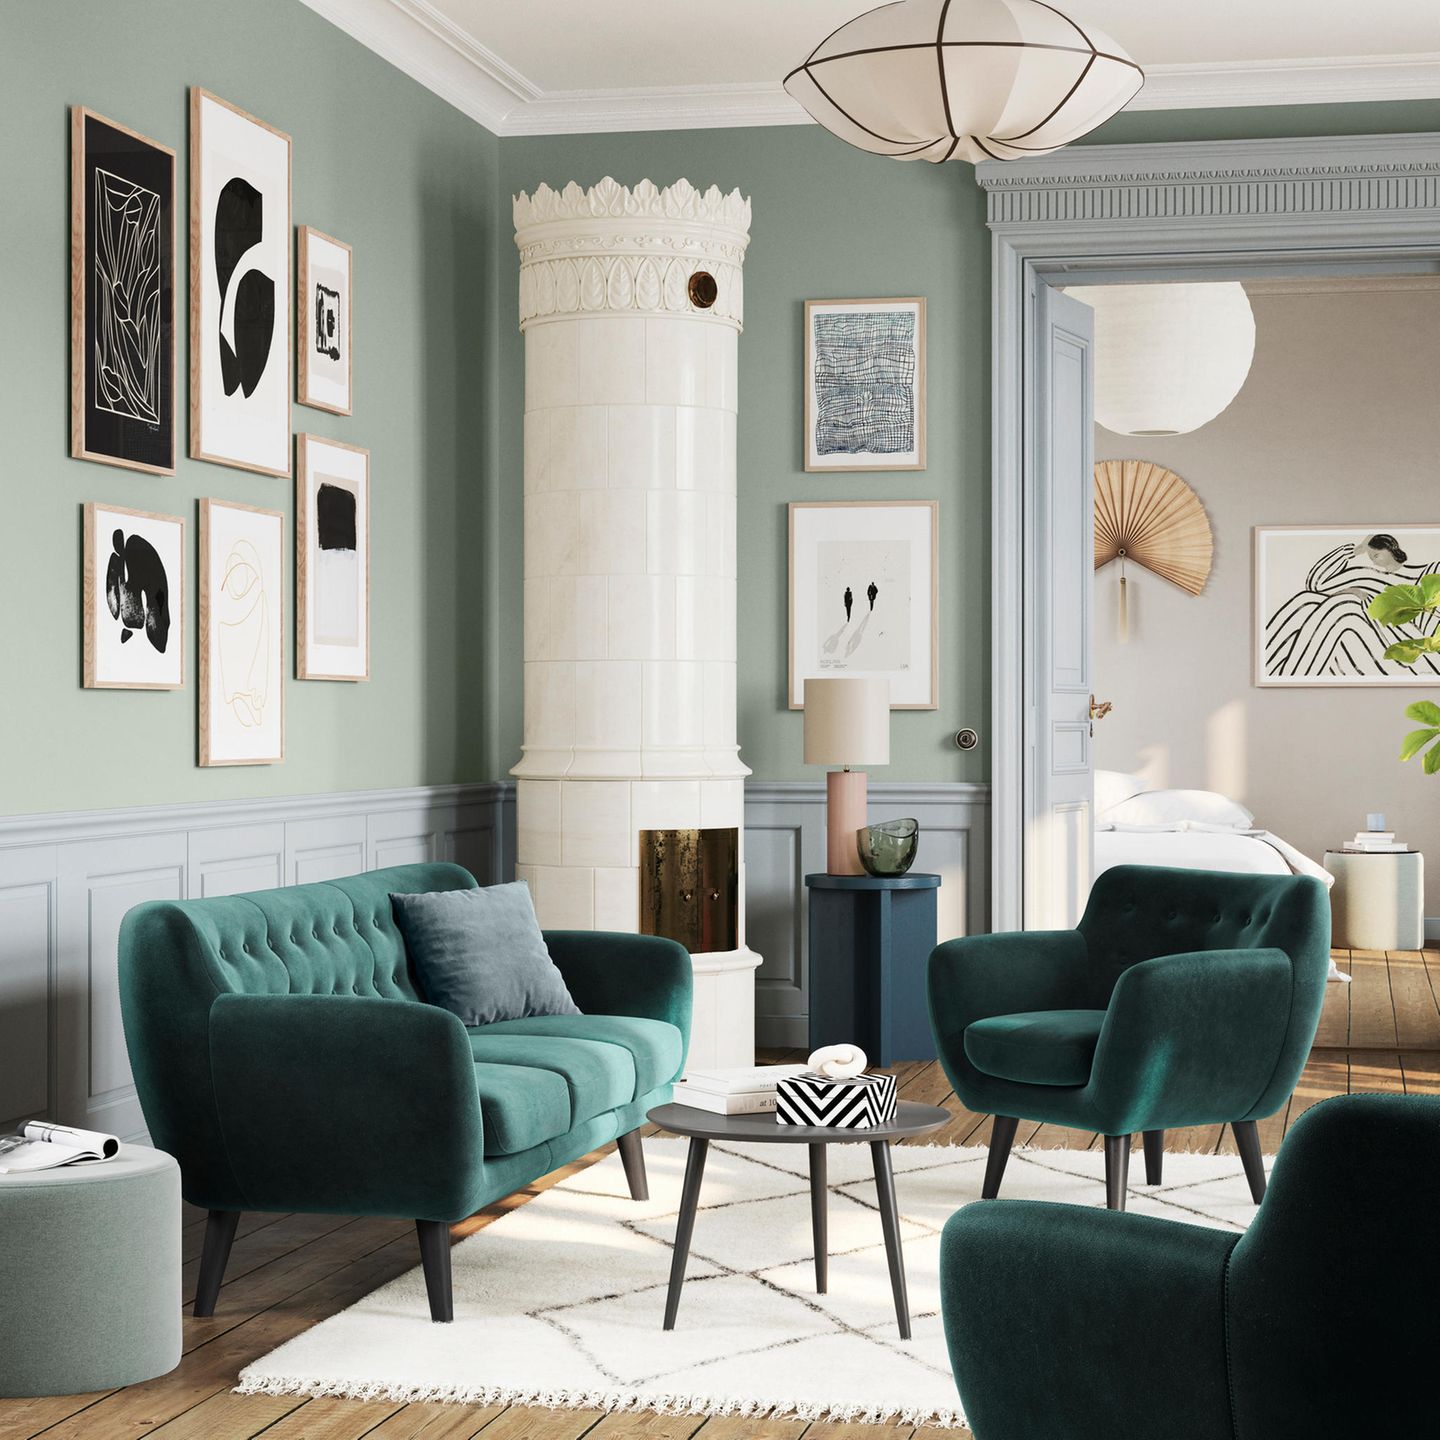 Samtgrünes Sofa in einem Altbau mit Schwedenofen und mintgrünen Wänden